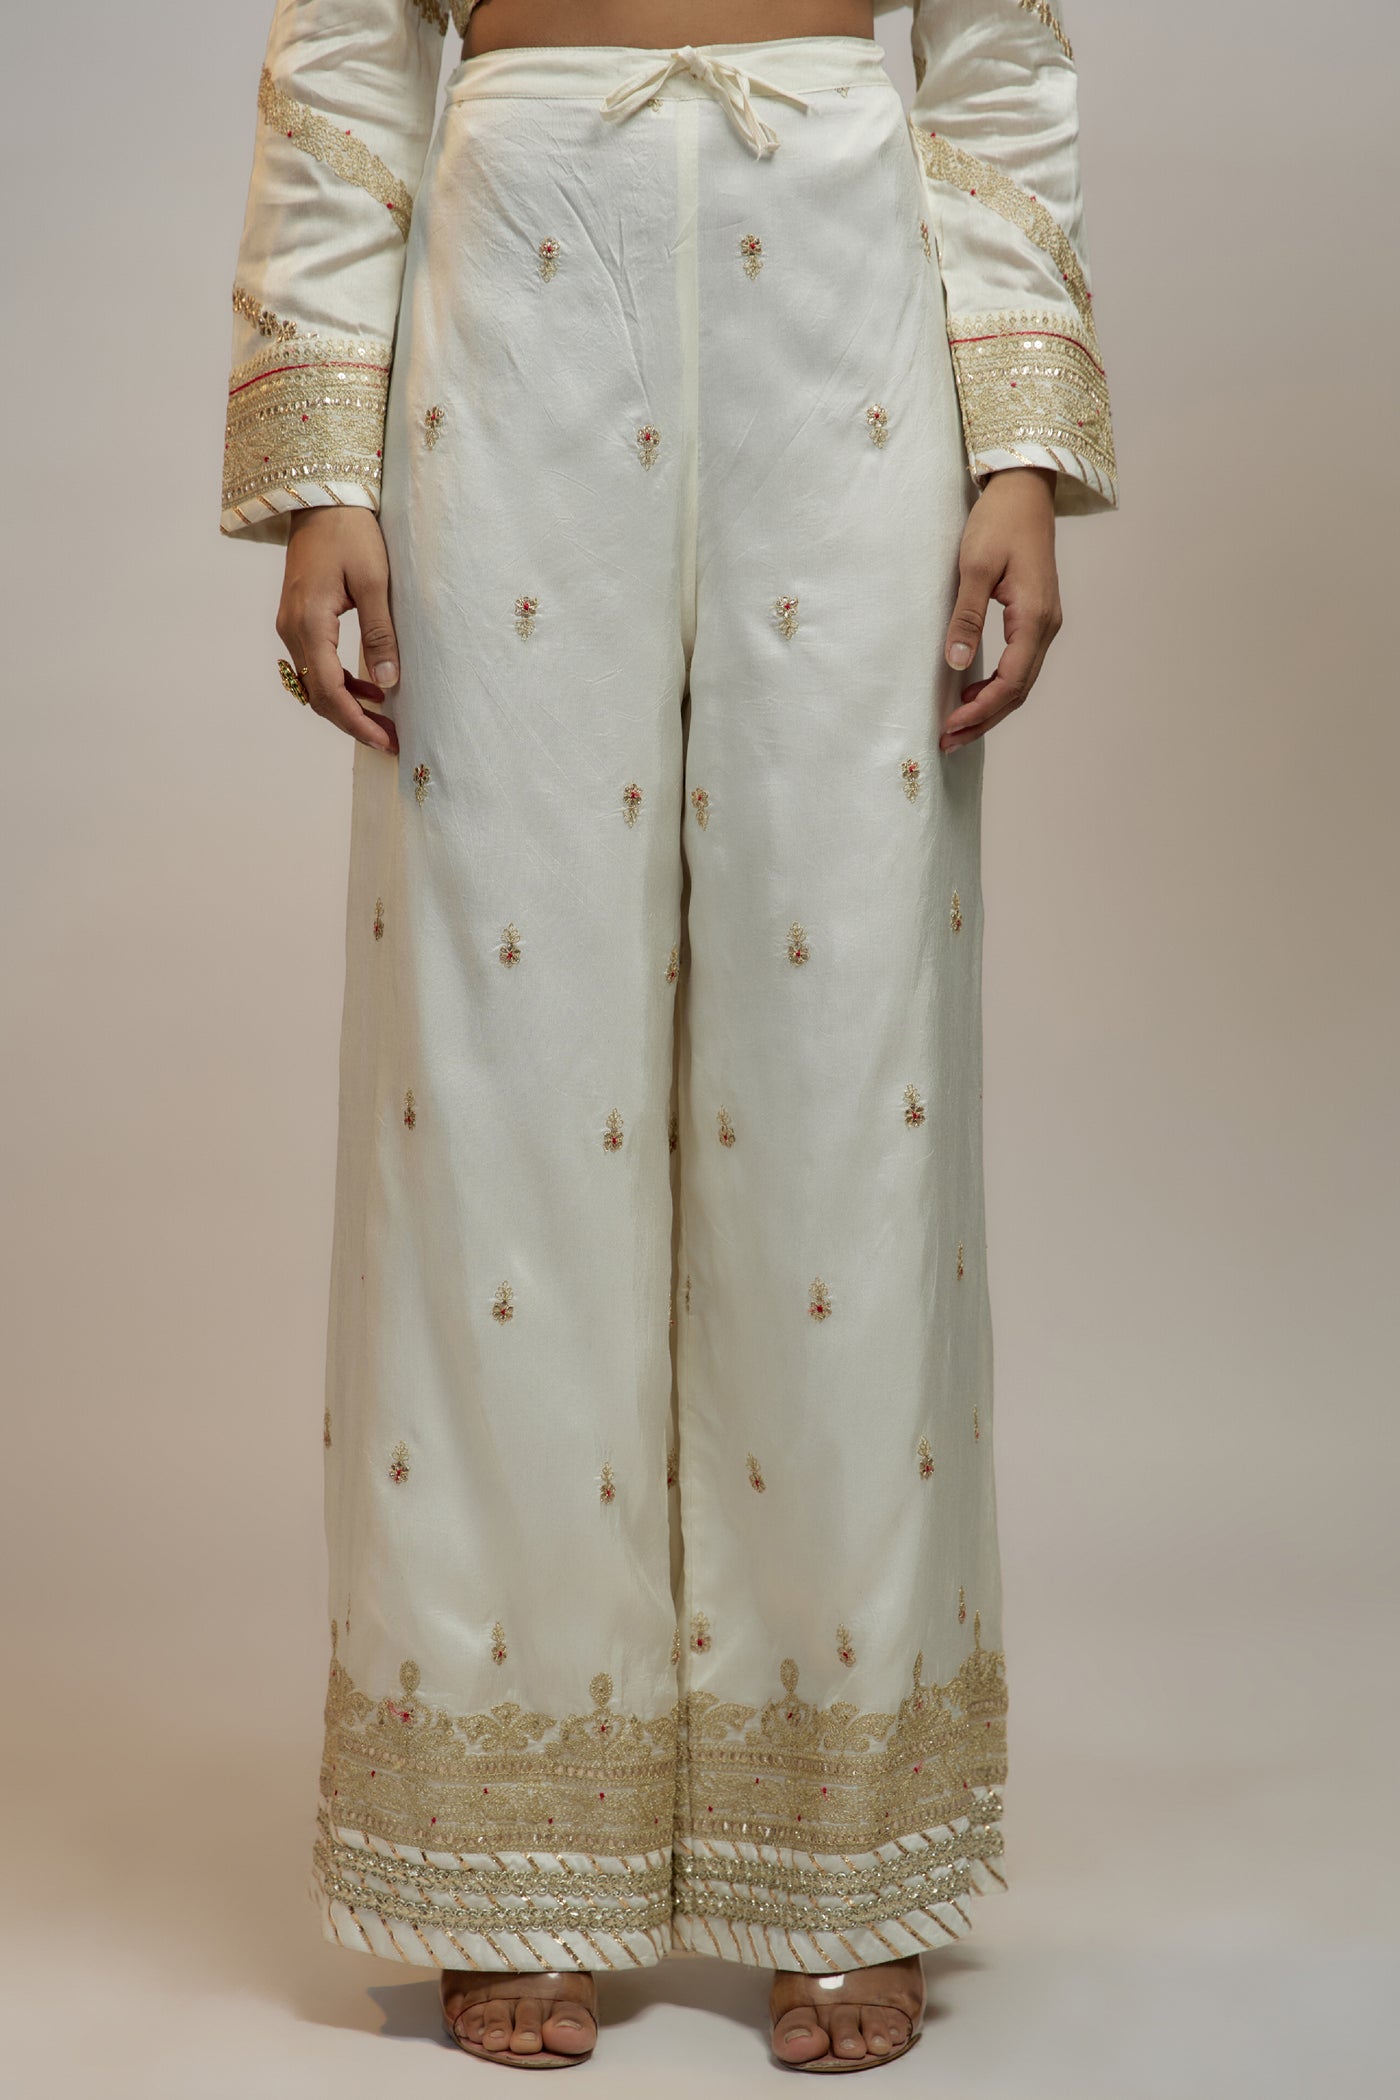 Gopi Vaid Golconda  Suhana Ag Set Indian designer wear online shopping melange singapore